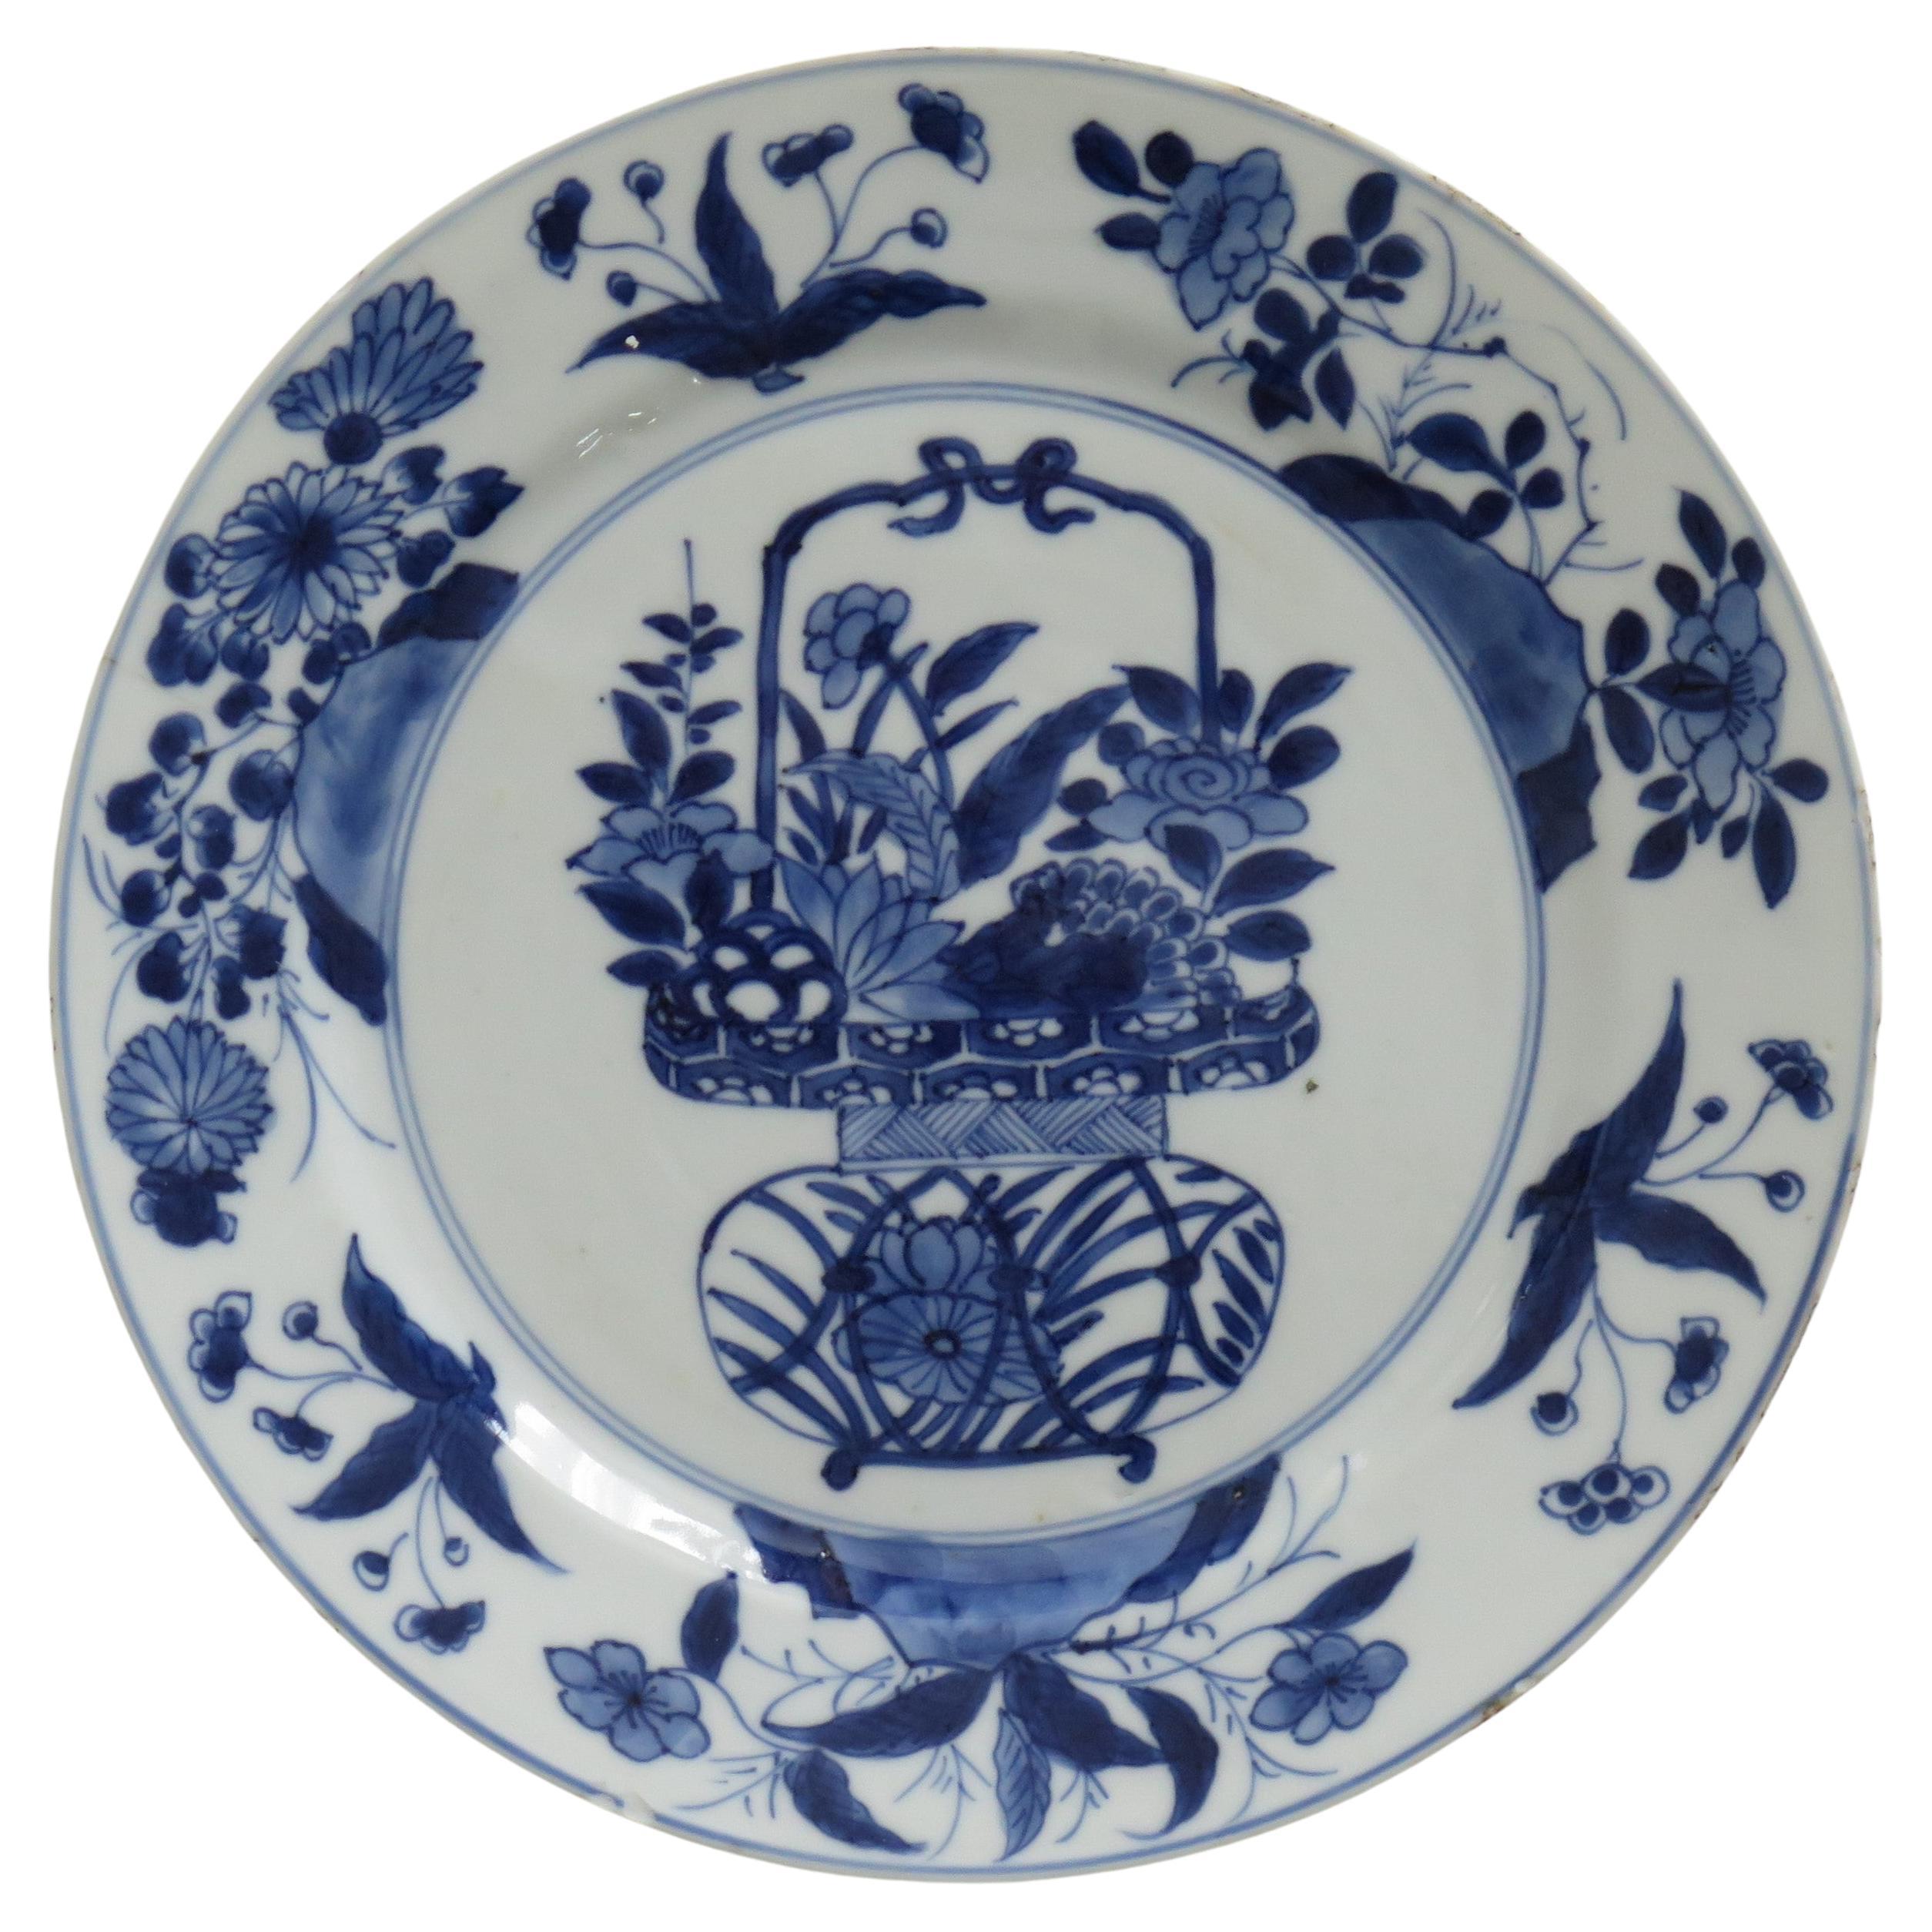 Chinesischer Blumenkorb aus blauem und weißem Porzellan mit Kangxi-Marke und Zeitgenössischem Muster, um 1700